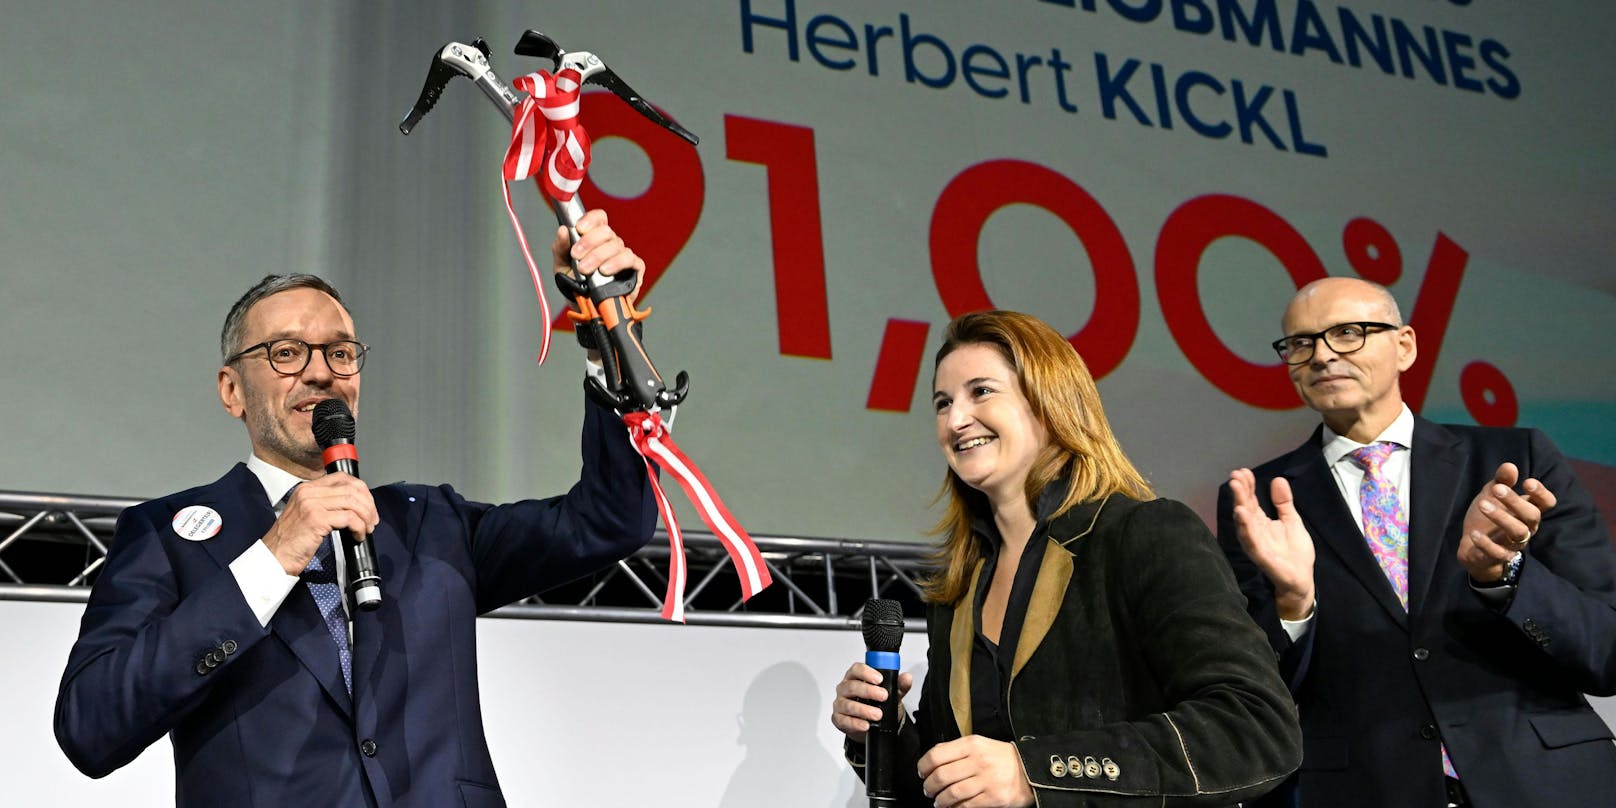 Herbert Kickl, am Samstag in St. Pölten über sein Wahlergebnis triumphierend.